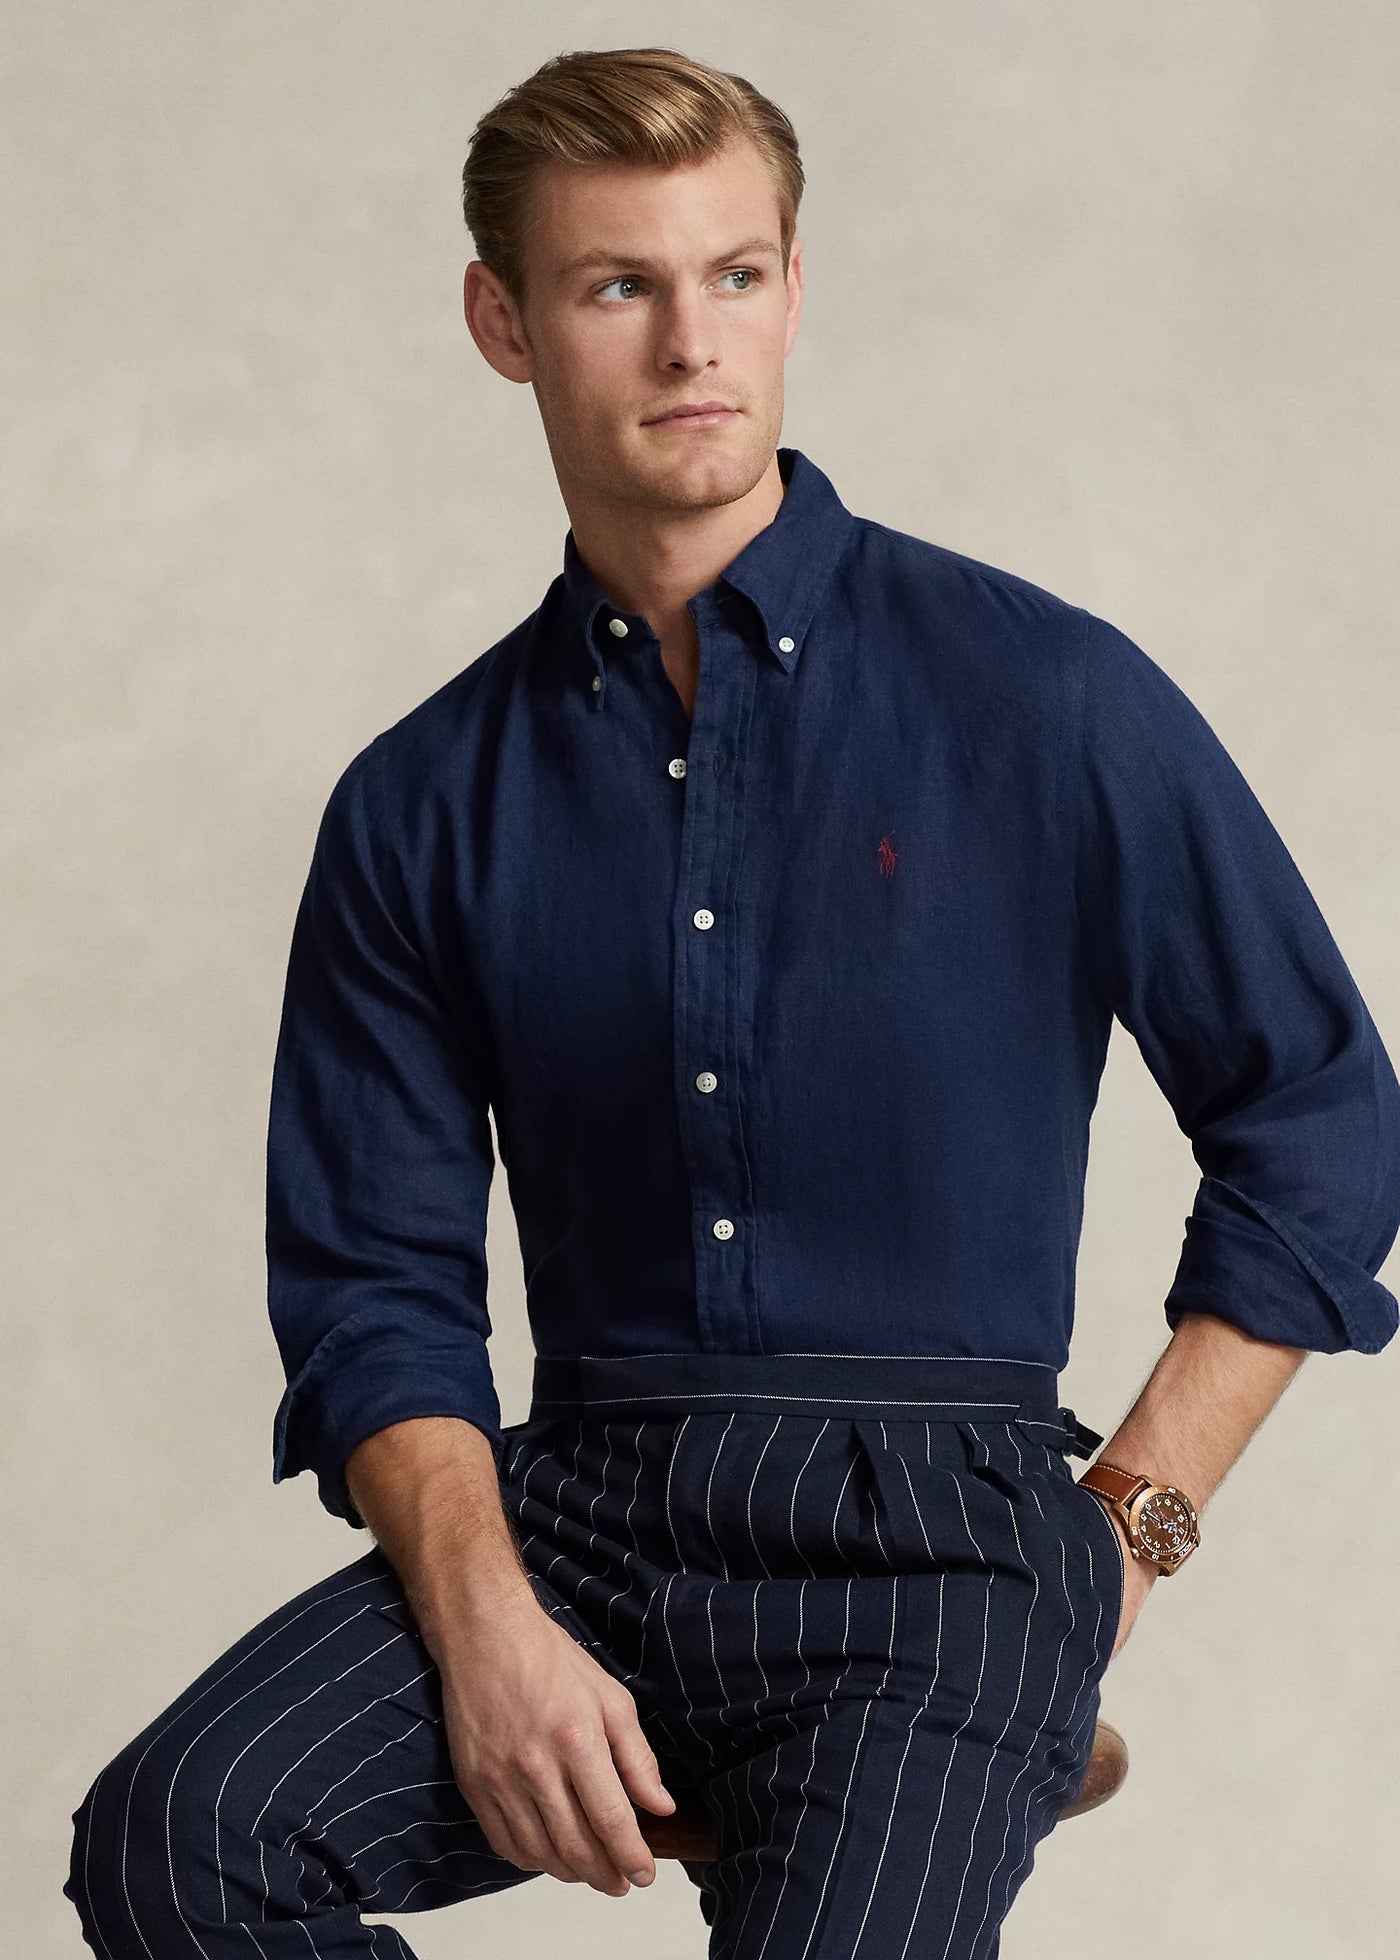 Ralph Lauren Custom Fit Linen Shirt | Newport Navy